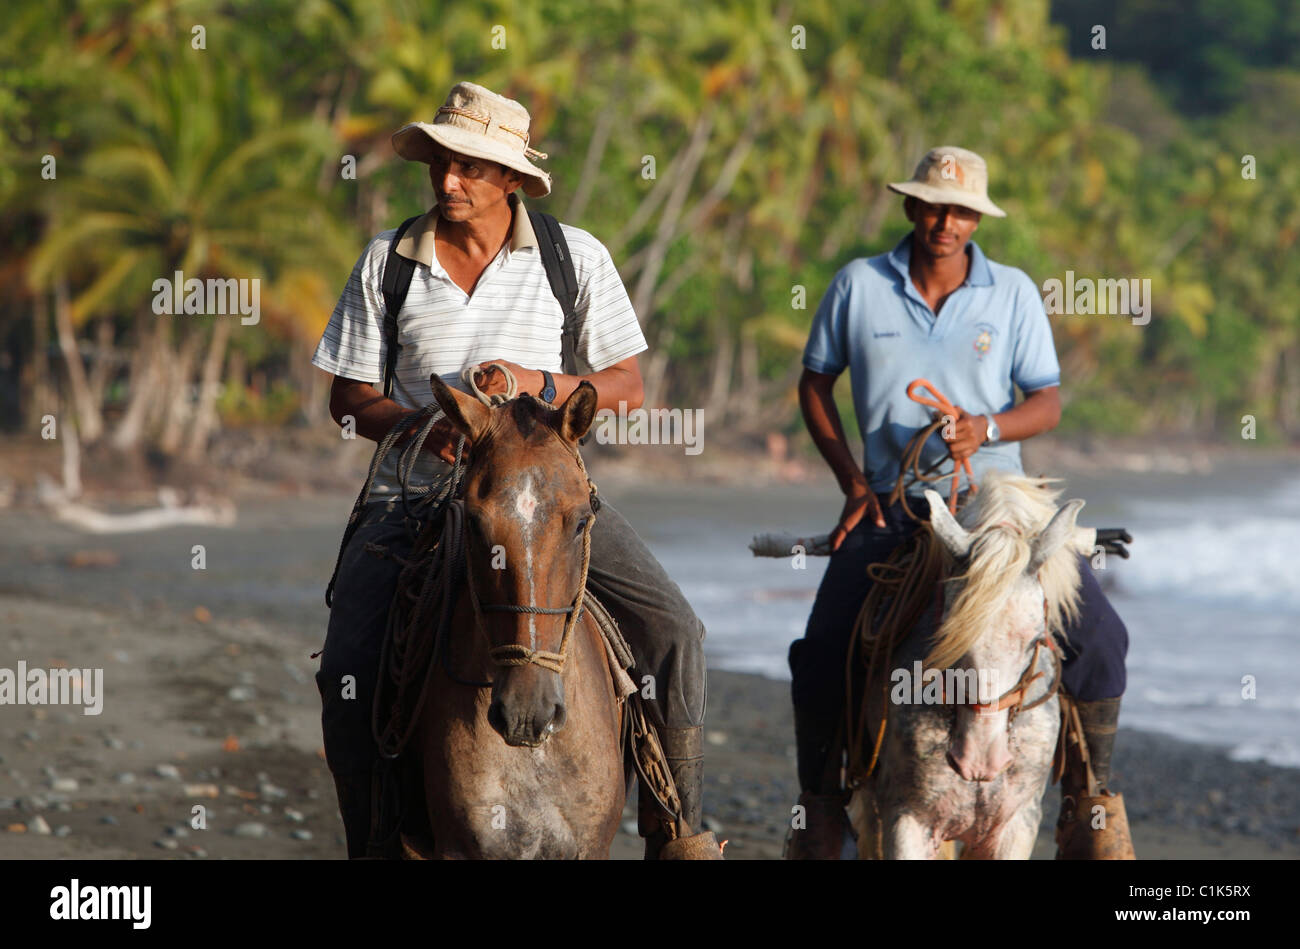 Los hombres de Costa Rica a caballo en la playa de Punta Banco, Costa Rica Foto de stock